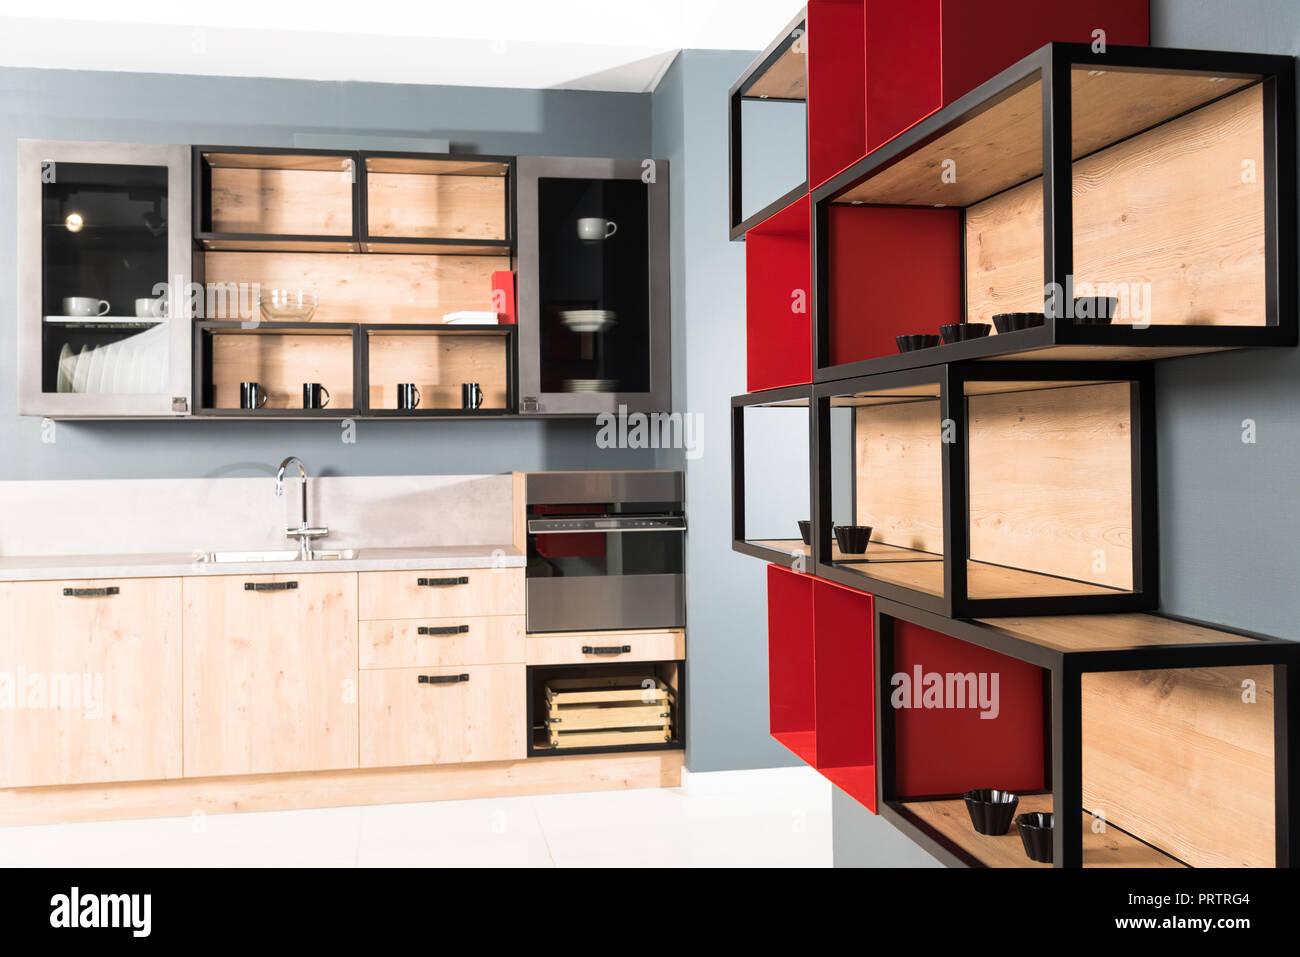 Innenraum der moderne saubere helle Küche mit Küche Zähler und rote Regale Stockfoto